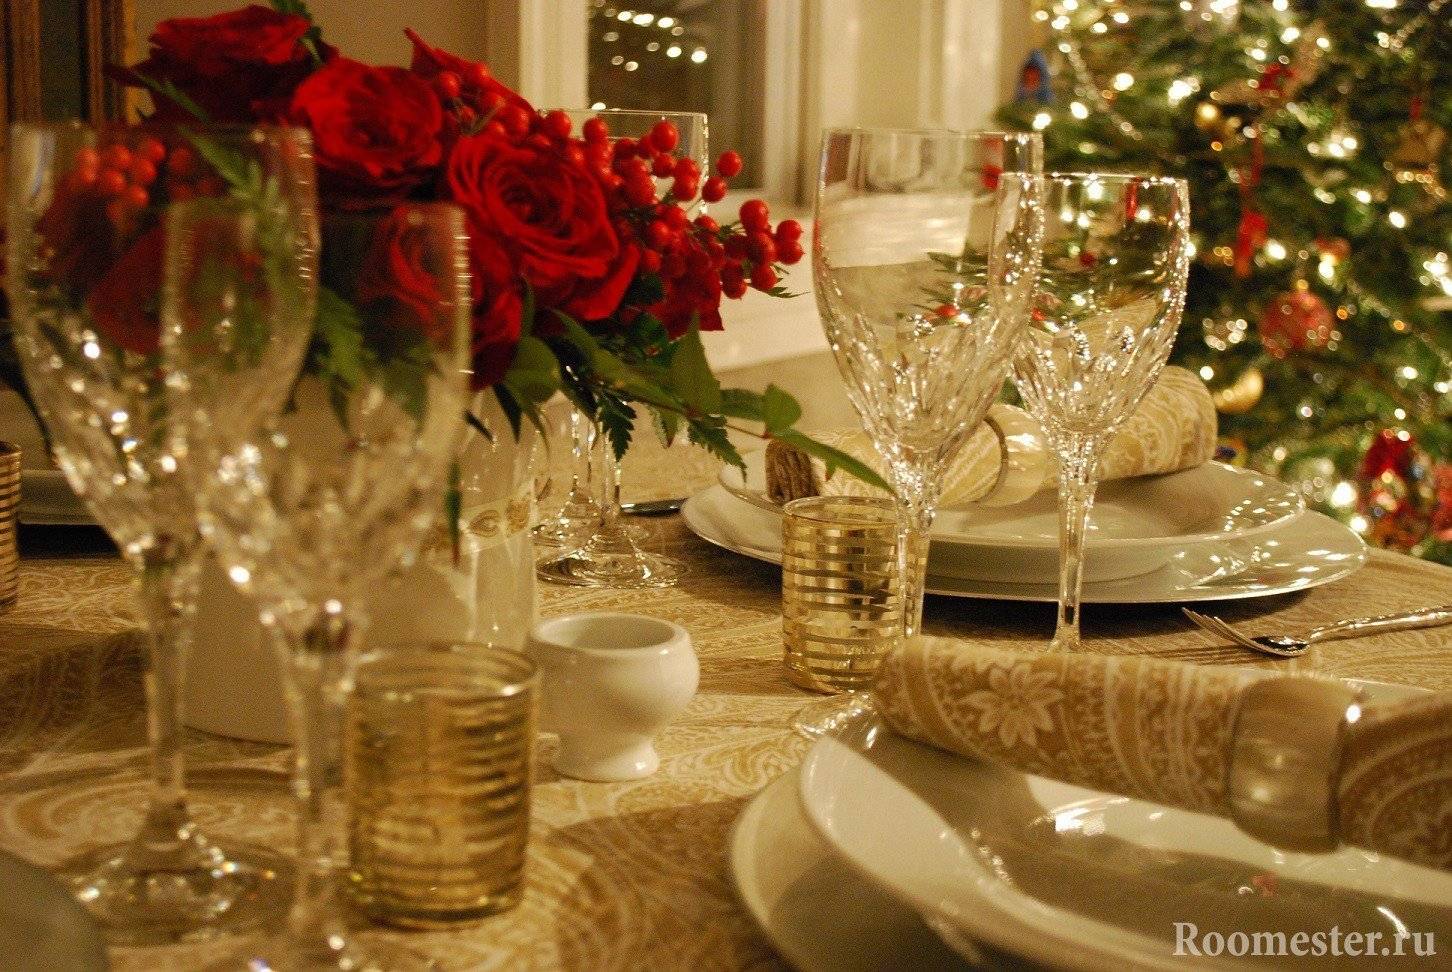 Праздничная сервировка стола на новый 2020 год + фото новогоднего декора